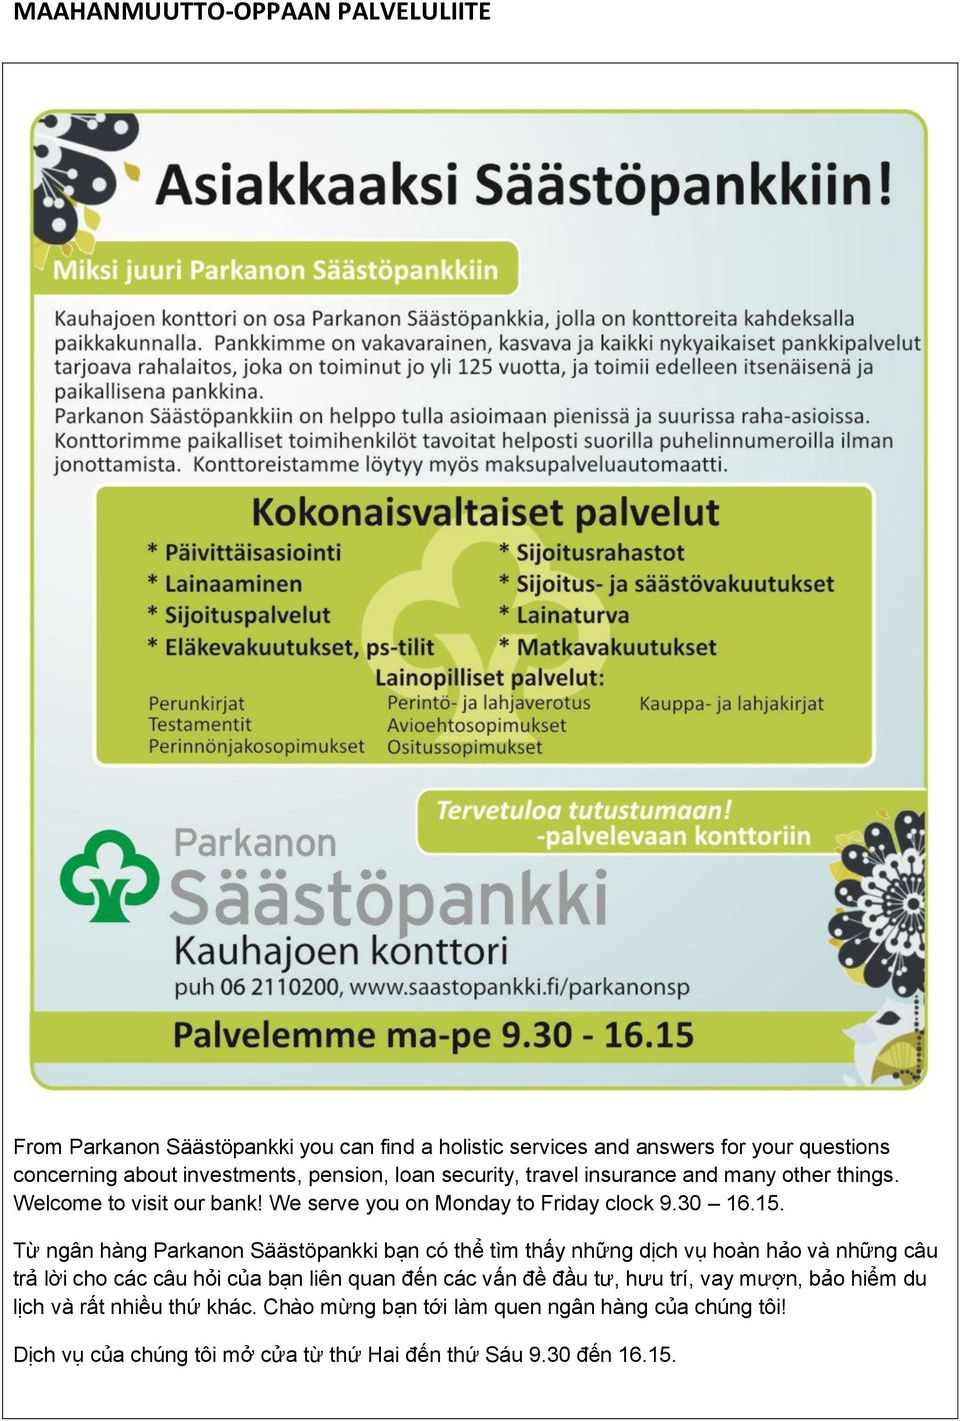 Từ ngân hàng Parkanon Säästöpankki bạn có thể tìm thấy những dịch vụ hoàn hảo và những câu trả lời cho các câu hỏi của bạn liên quan đến các vấn đề